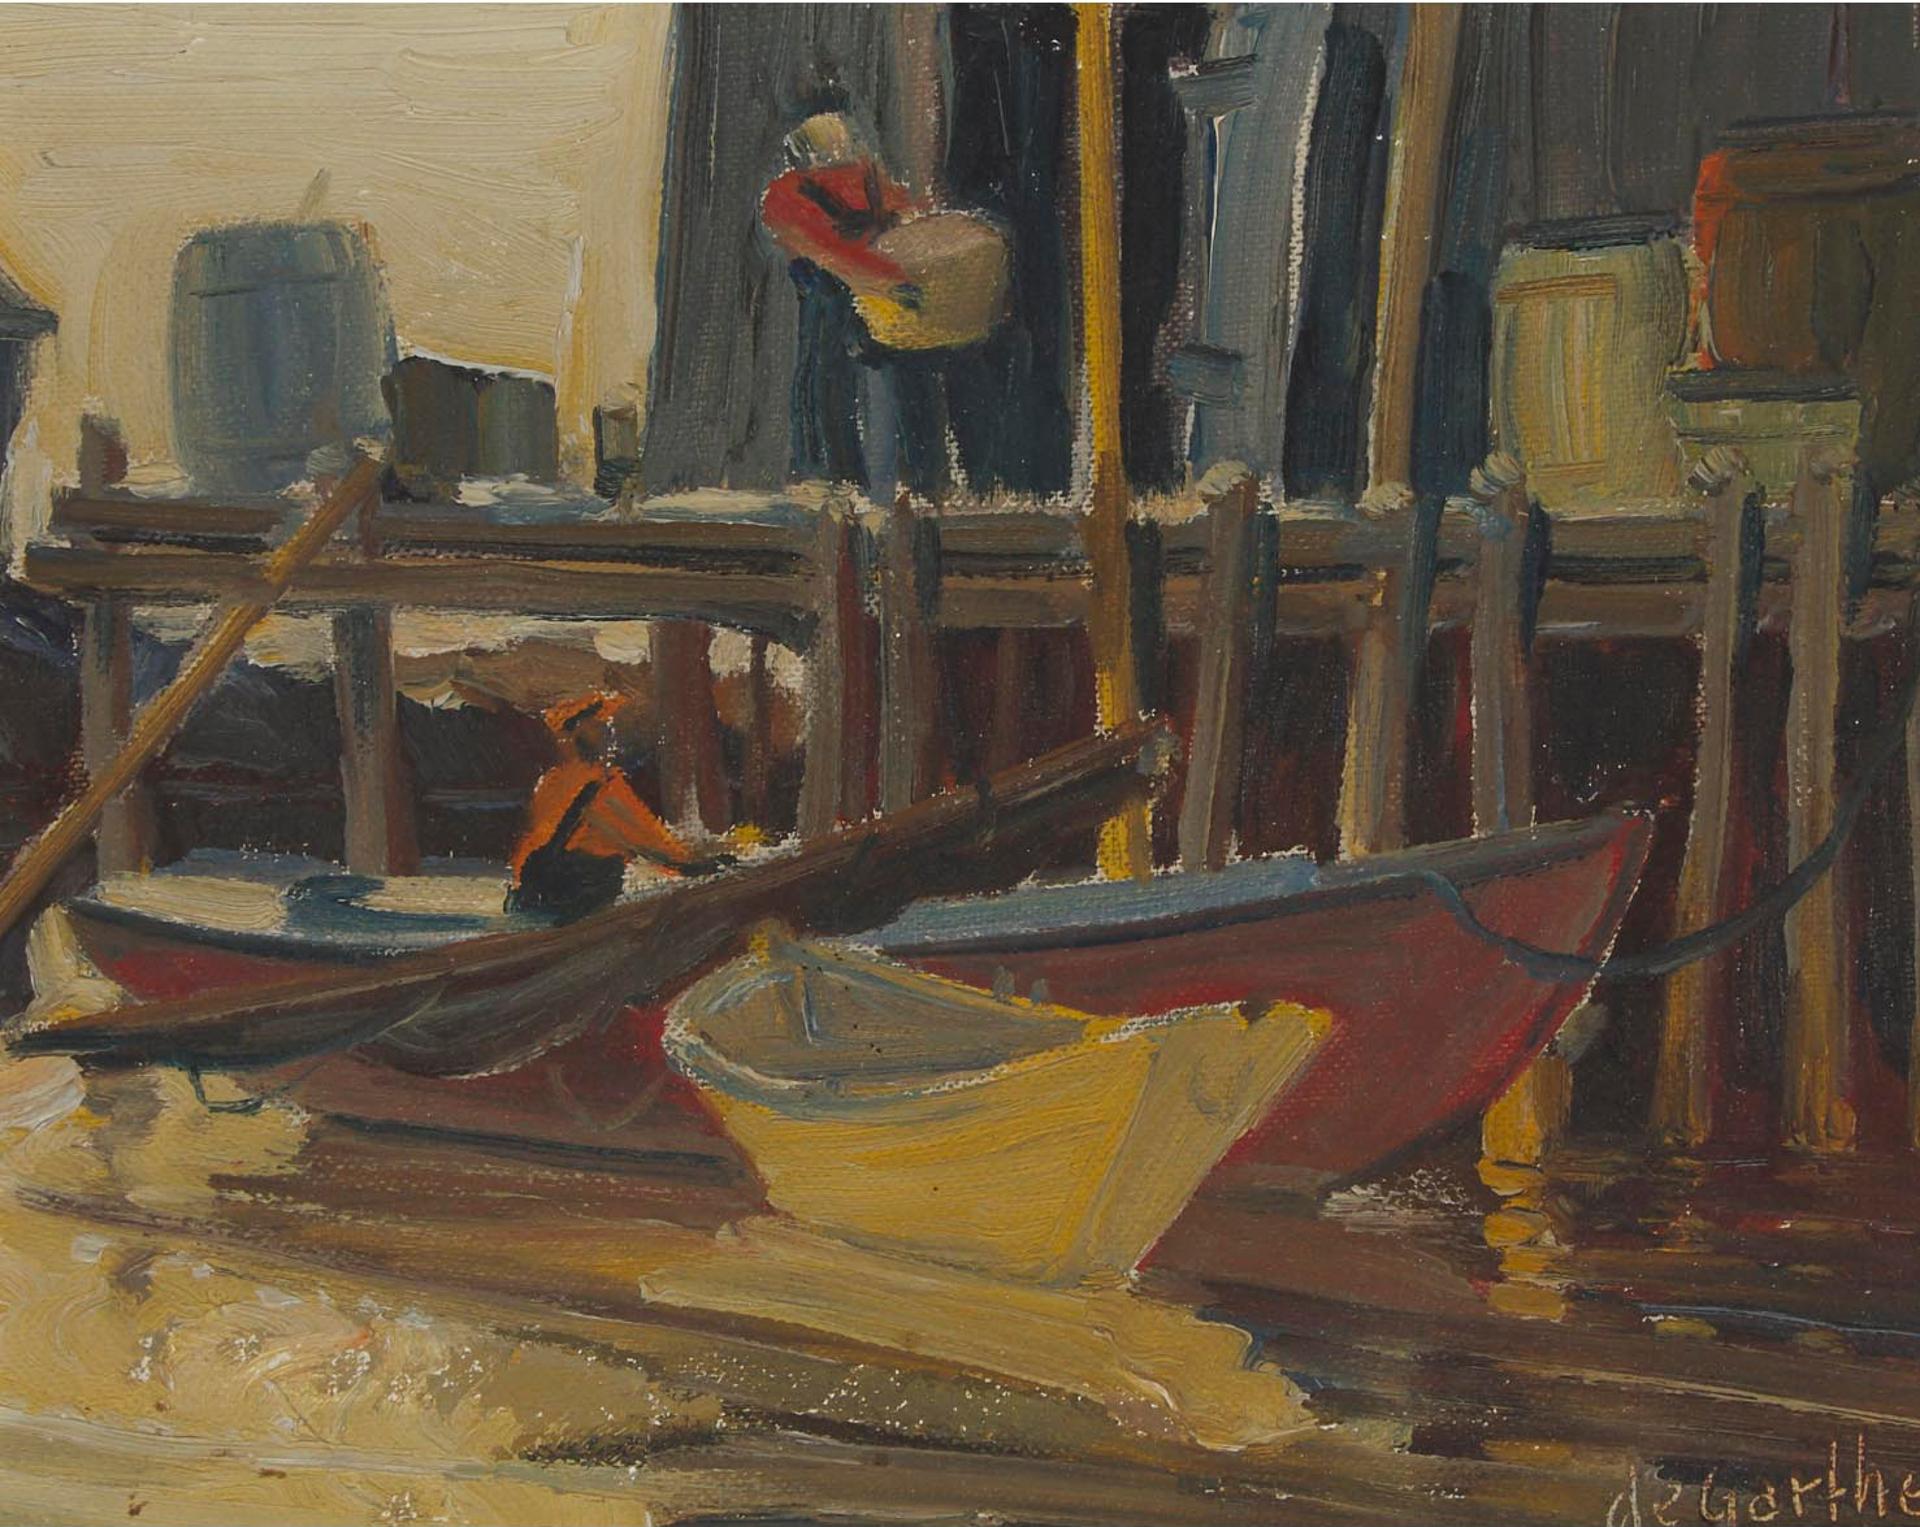 William Edward de Garthe (1907-1983) - Peggy's Cove, Nova Scotia, Unloading, 1954